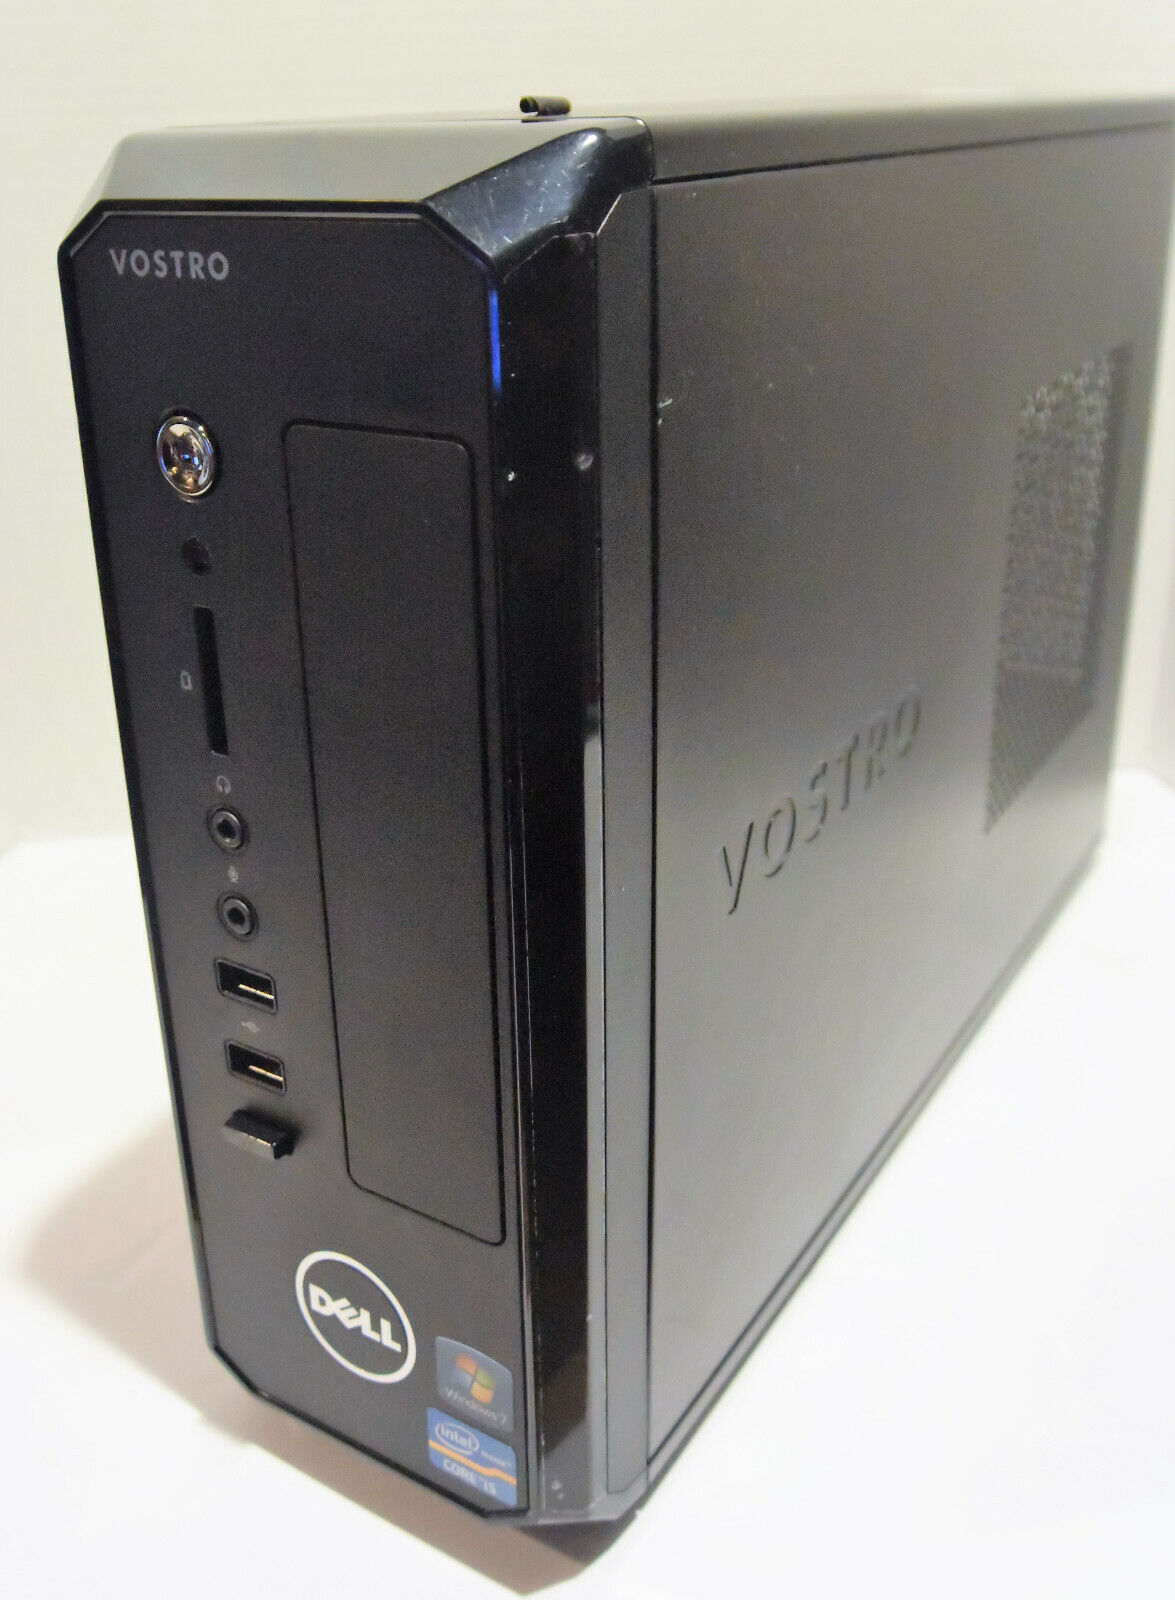 Dell Vostro 270s Desktop PC (Intel Core i5 3rd Gen 2.8GHz 4GB 1TB Win 10) |  eBay